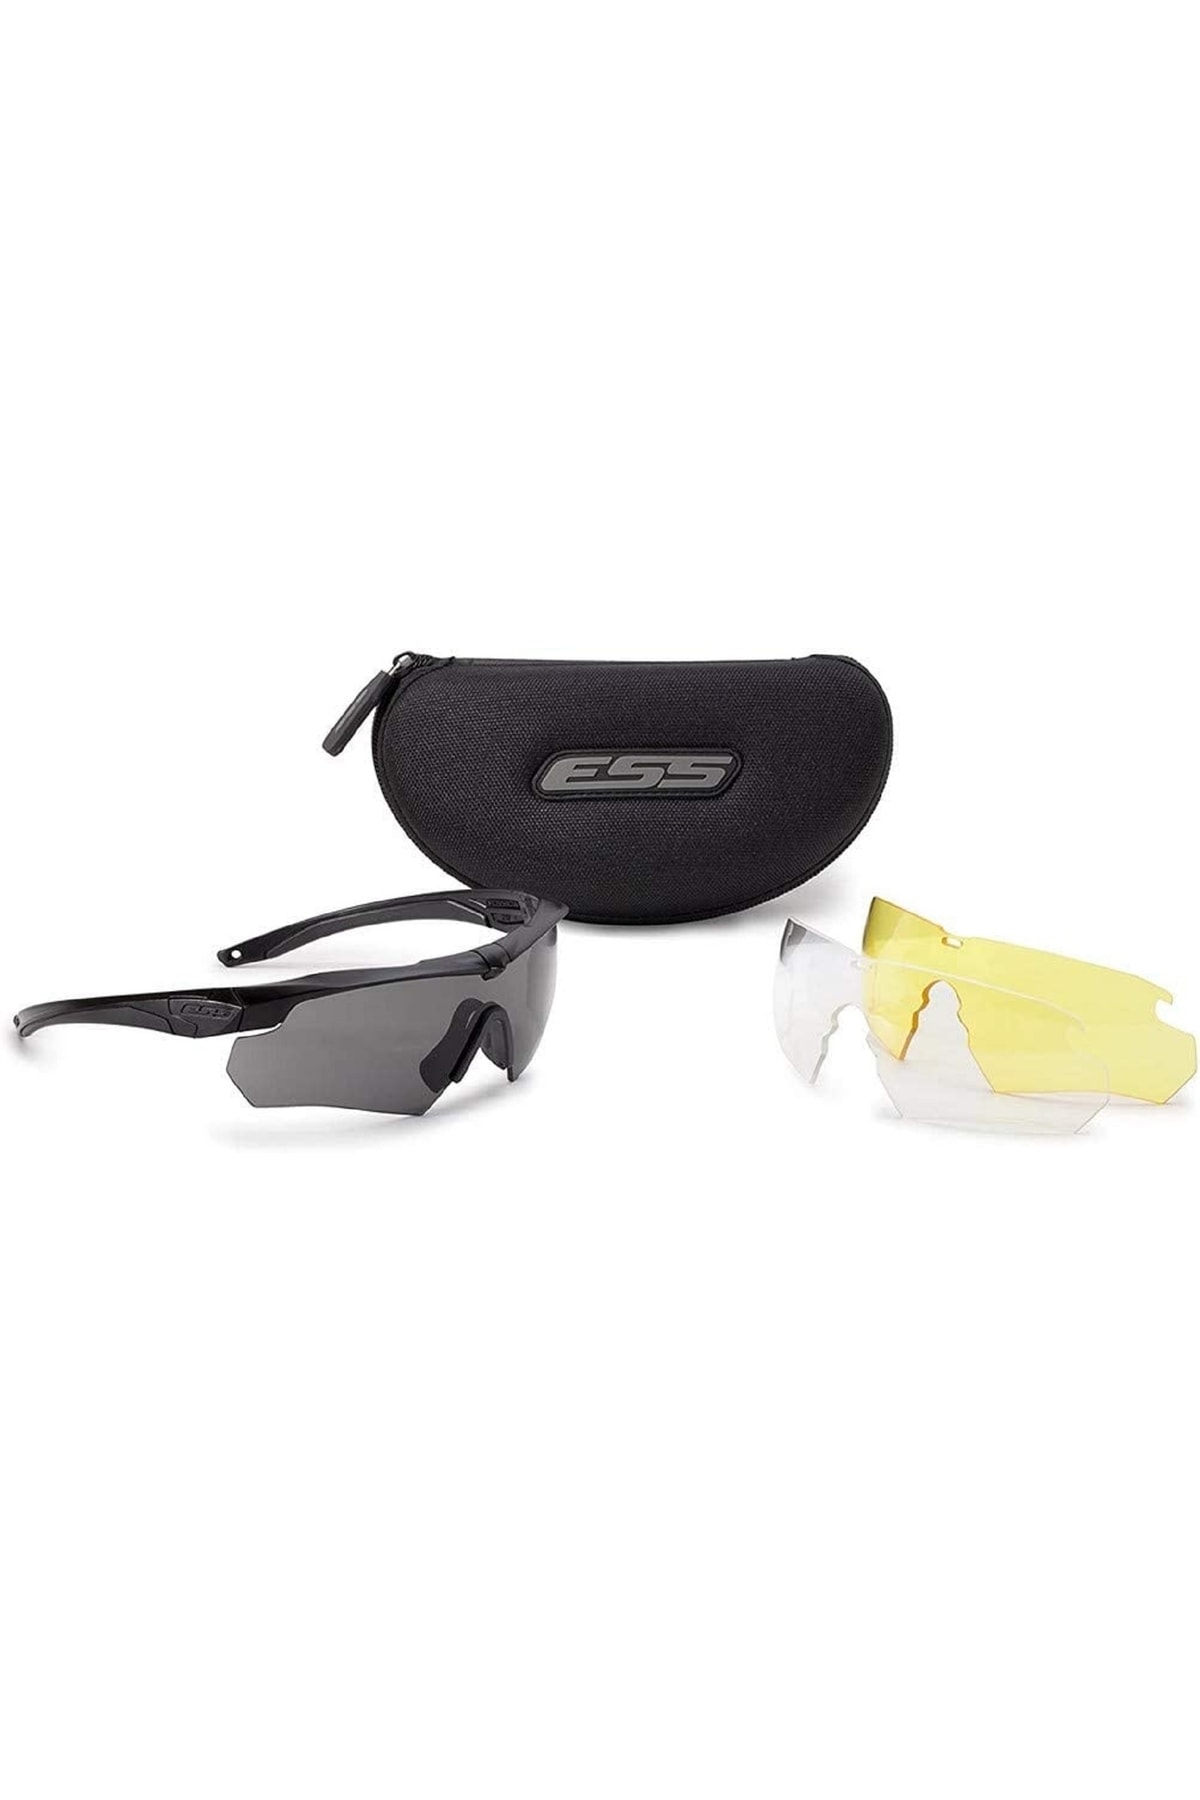 ESS Eyewear 314538-ssı Çapraz Seri Crossbow 3ls Kit-askeri Gözlük 3 Lens Balistik Ordu Güneş Gözlüğü